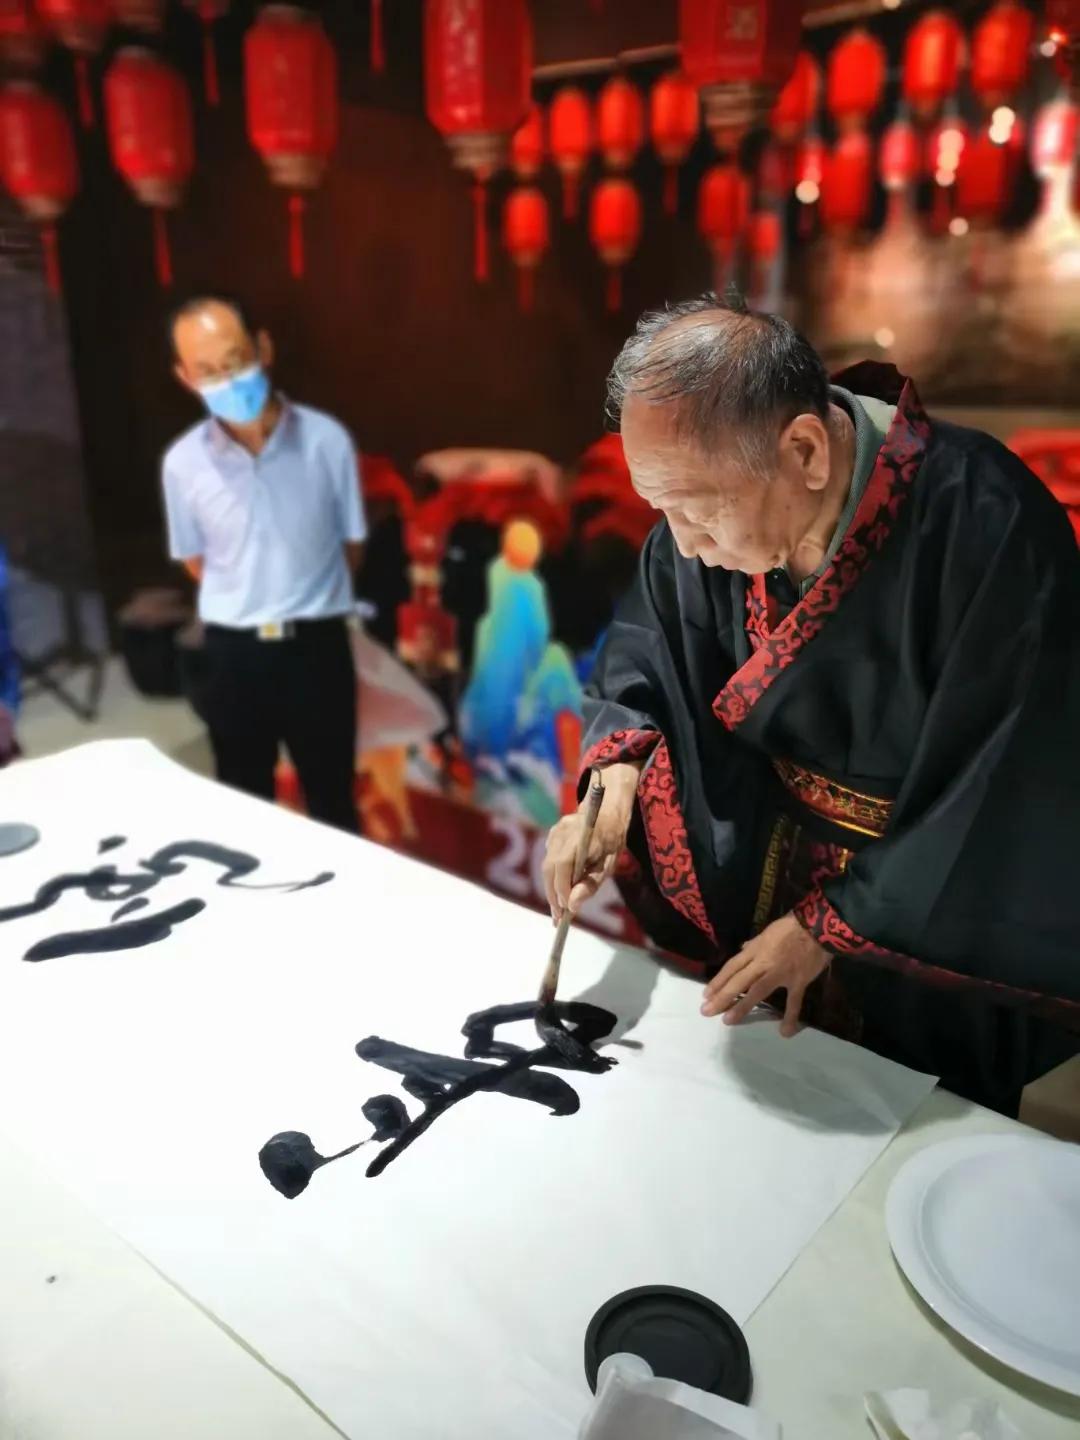 庆中国共产党成立100周年暨百名书画艺术家巧绘美丽河北走进广平